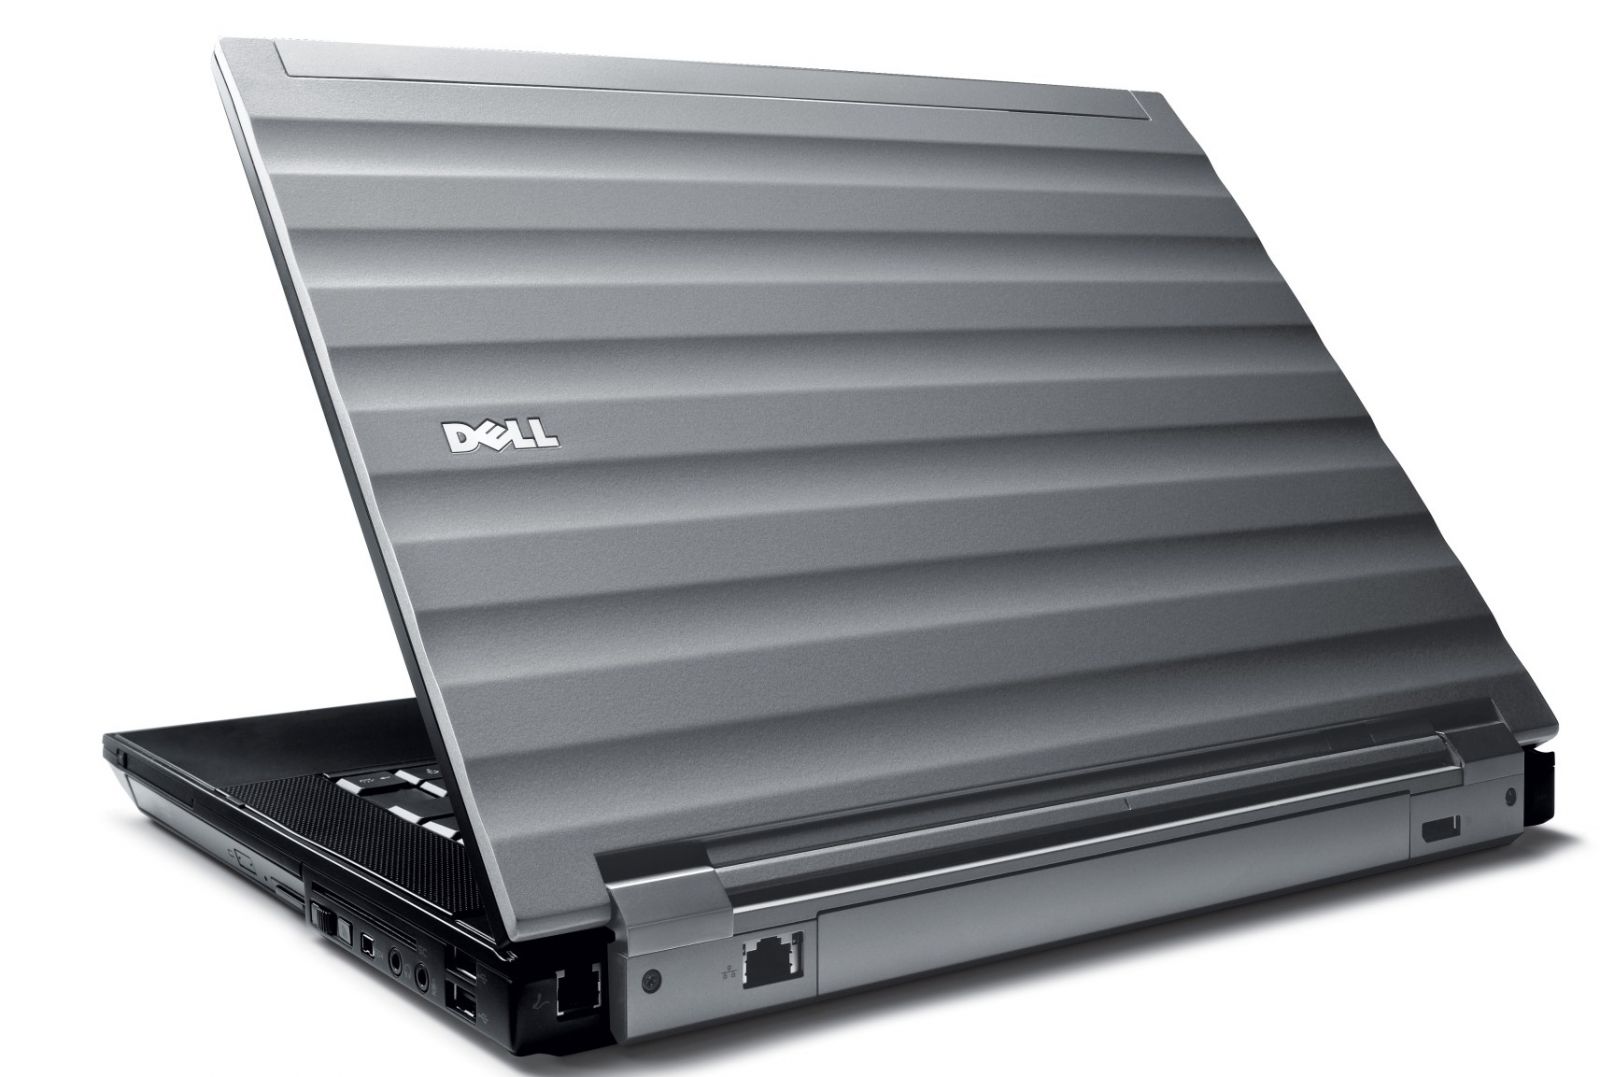 DELL Precision M4400 (Core 2 T9900, Ram 4GB, HDD 250GB, Màn Hình 15.4 inch)